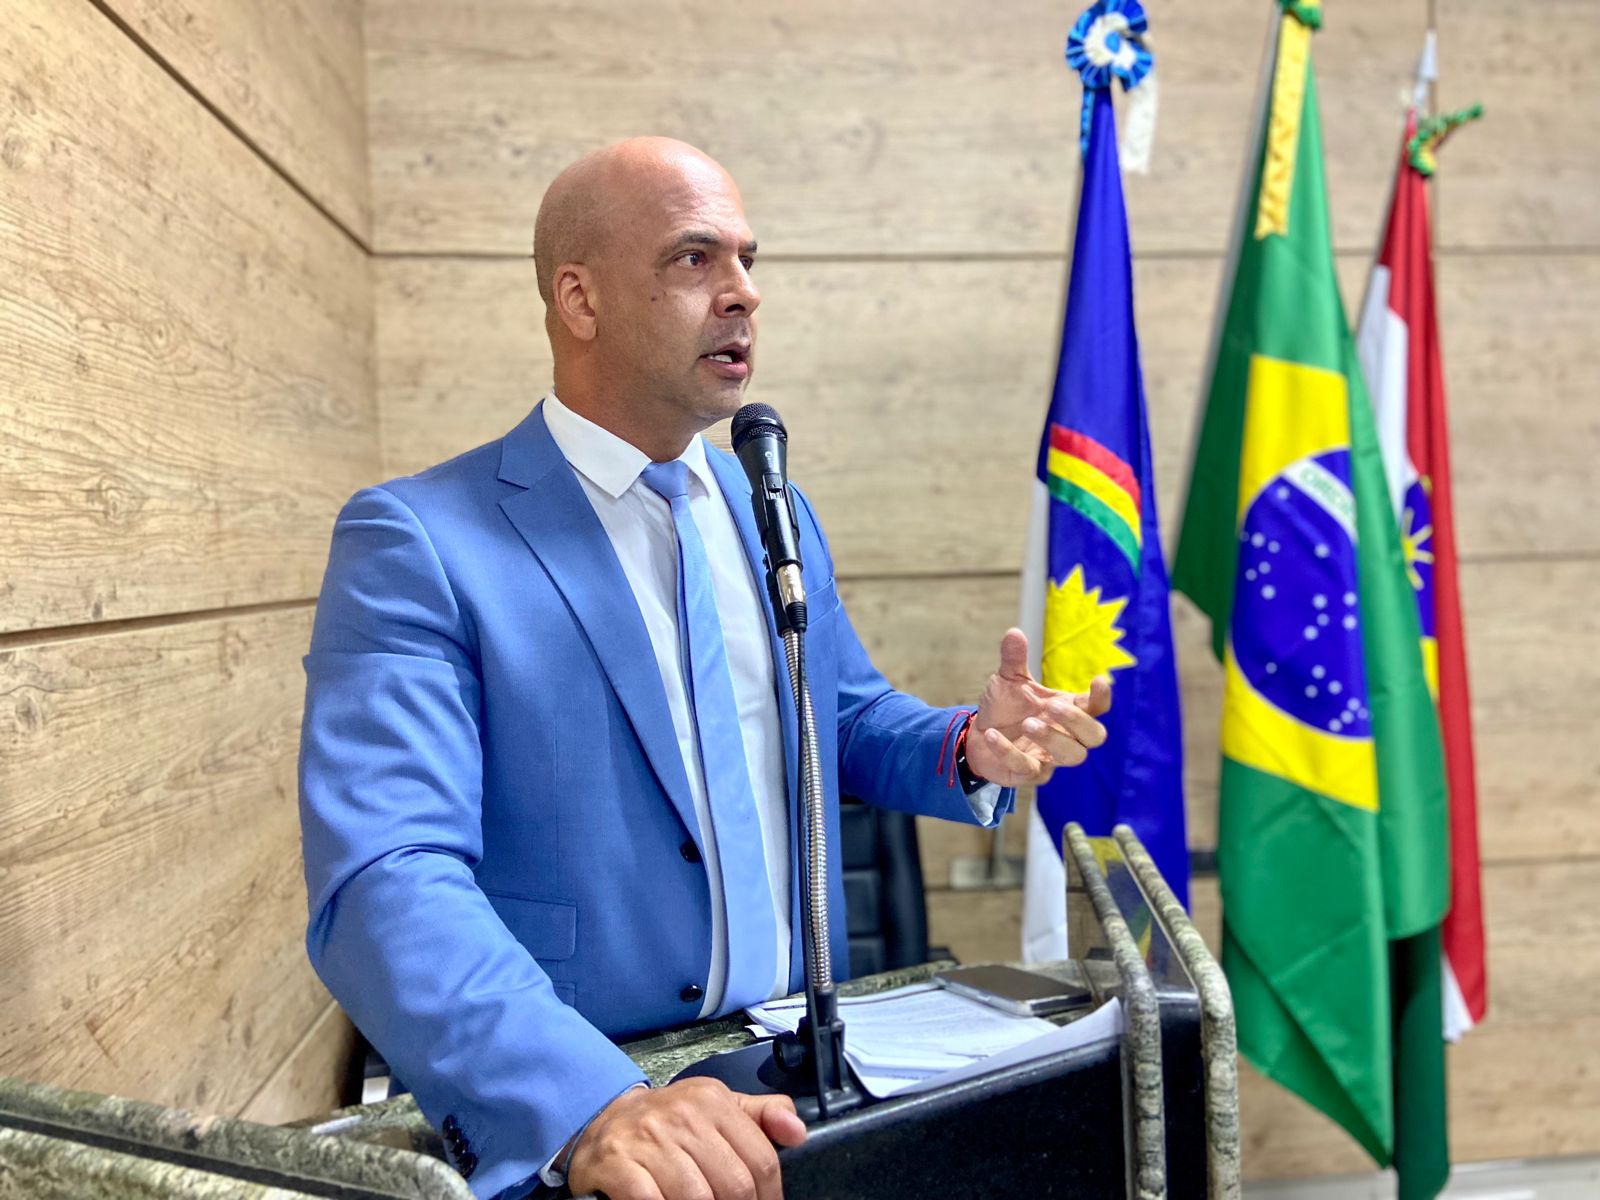 Anderson Correia propõe criação do “Programa Energia Limpa” para diminuir custos com energia elétrica nos órgãos públicos de Caruaru